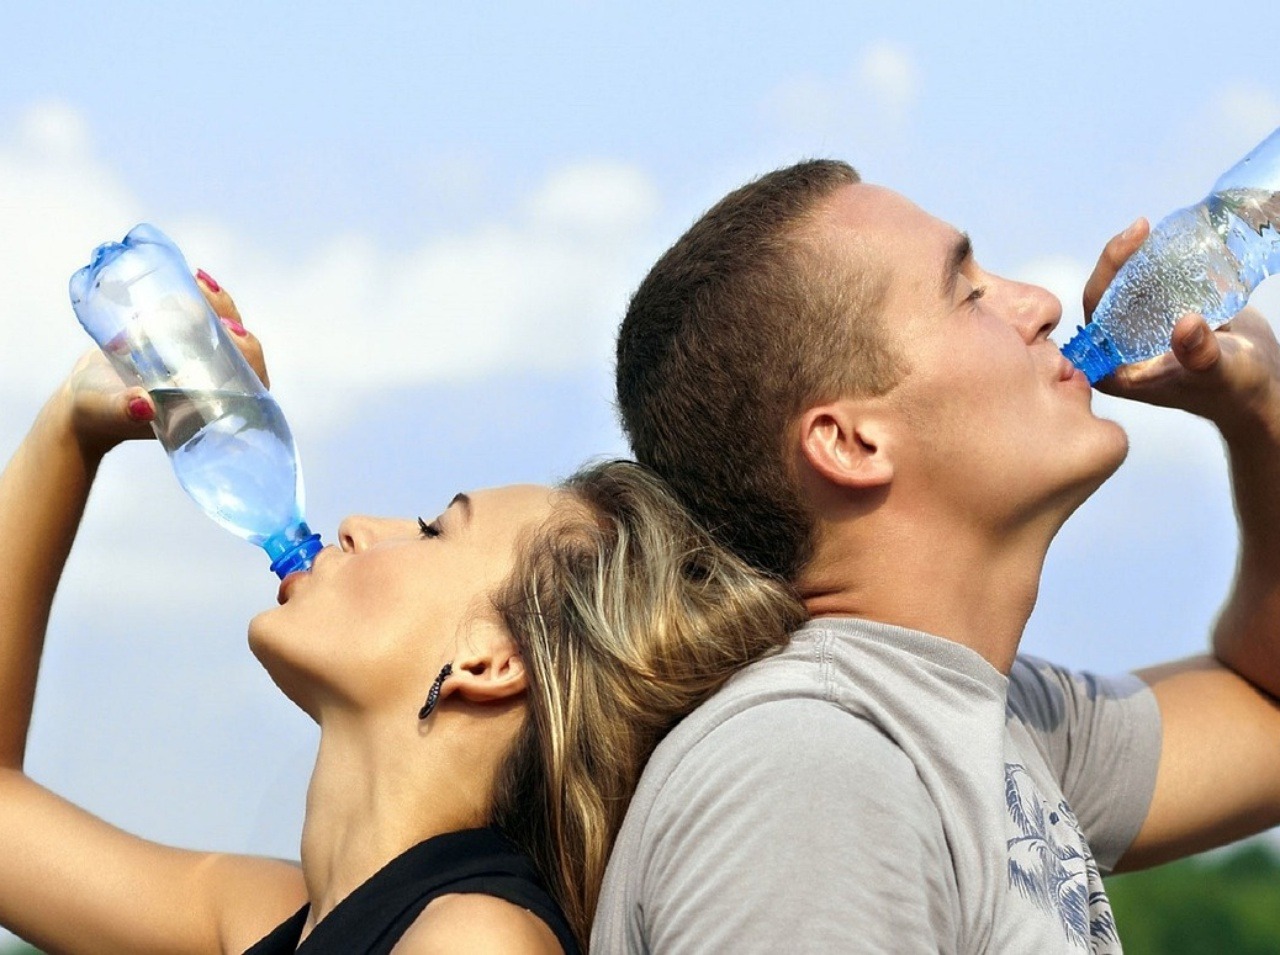 Pitie vody udržuje náš organizmus v správnej kondícii. Viete, aký je rozdiel medzi pitím studenej a teplej vody, ako na nás vplýva tvrdá či mäkká voda? 